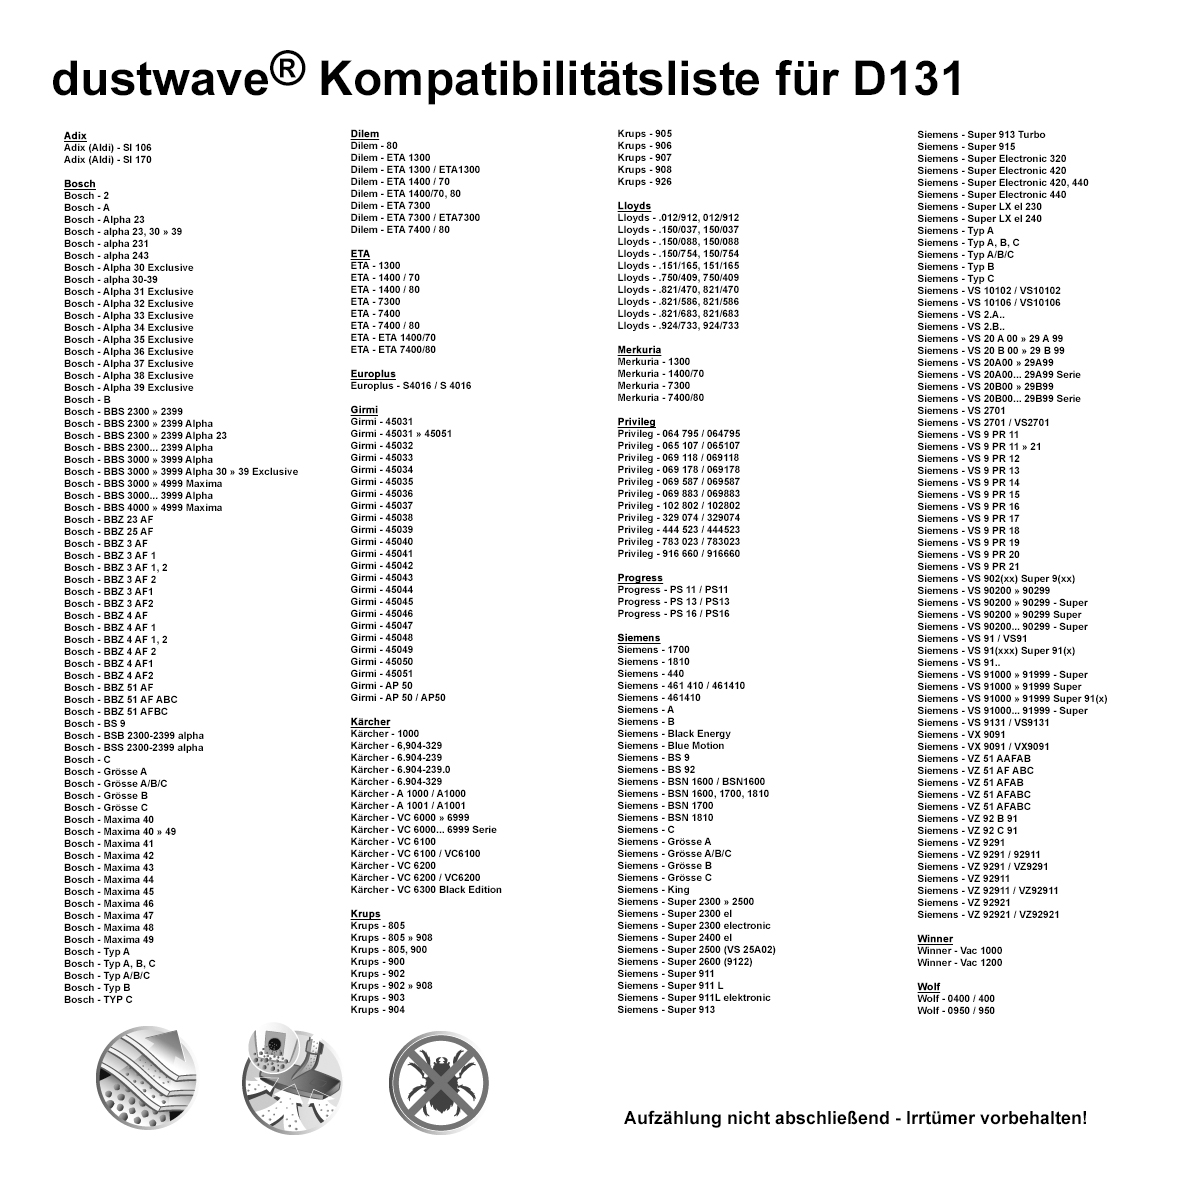 Dustwave® 40 Staubsaugerbeutel für SWIRL S 64 - hocheffizient, mehrlagiges Mikrovlies mit Hygieneverschluss - Made in Germany